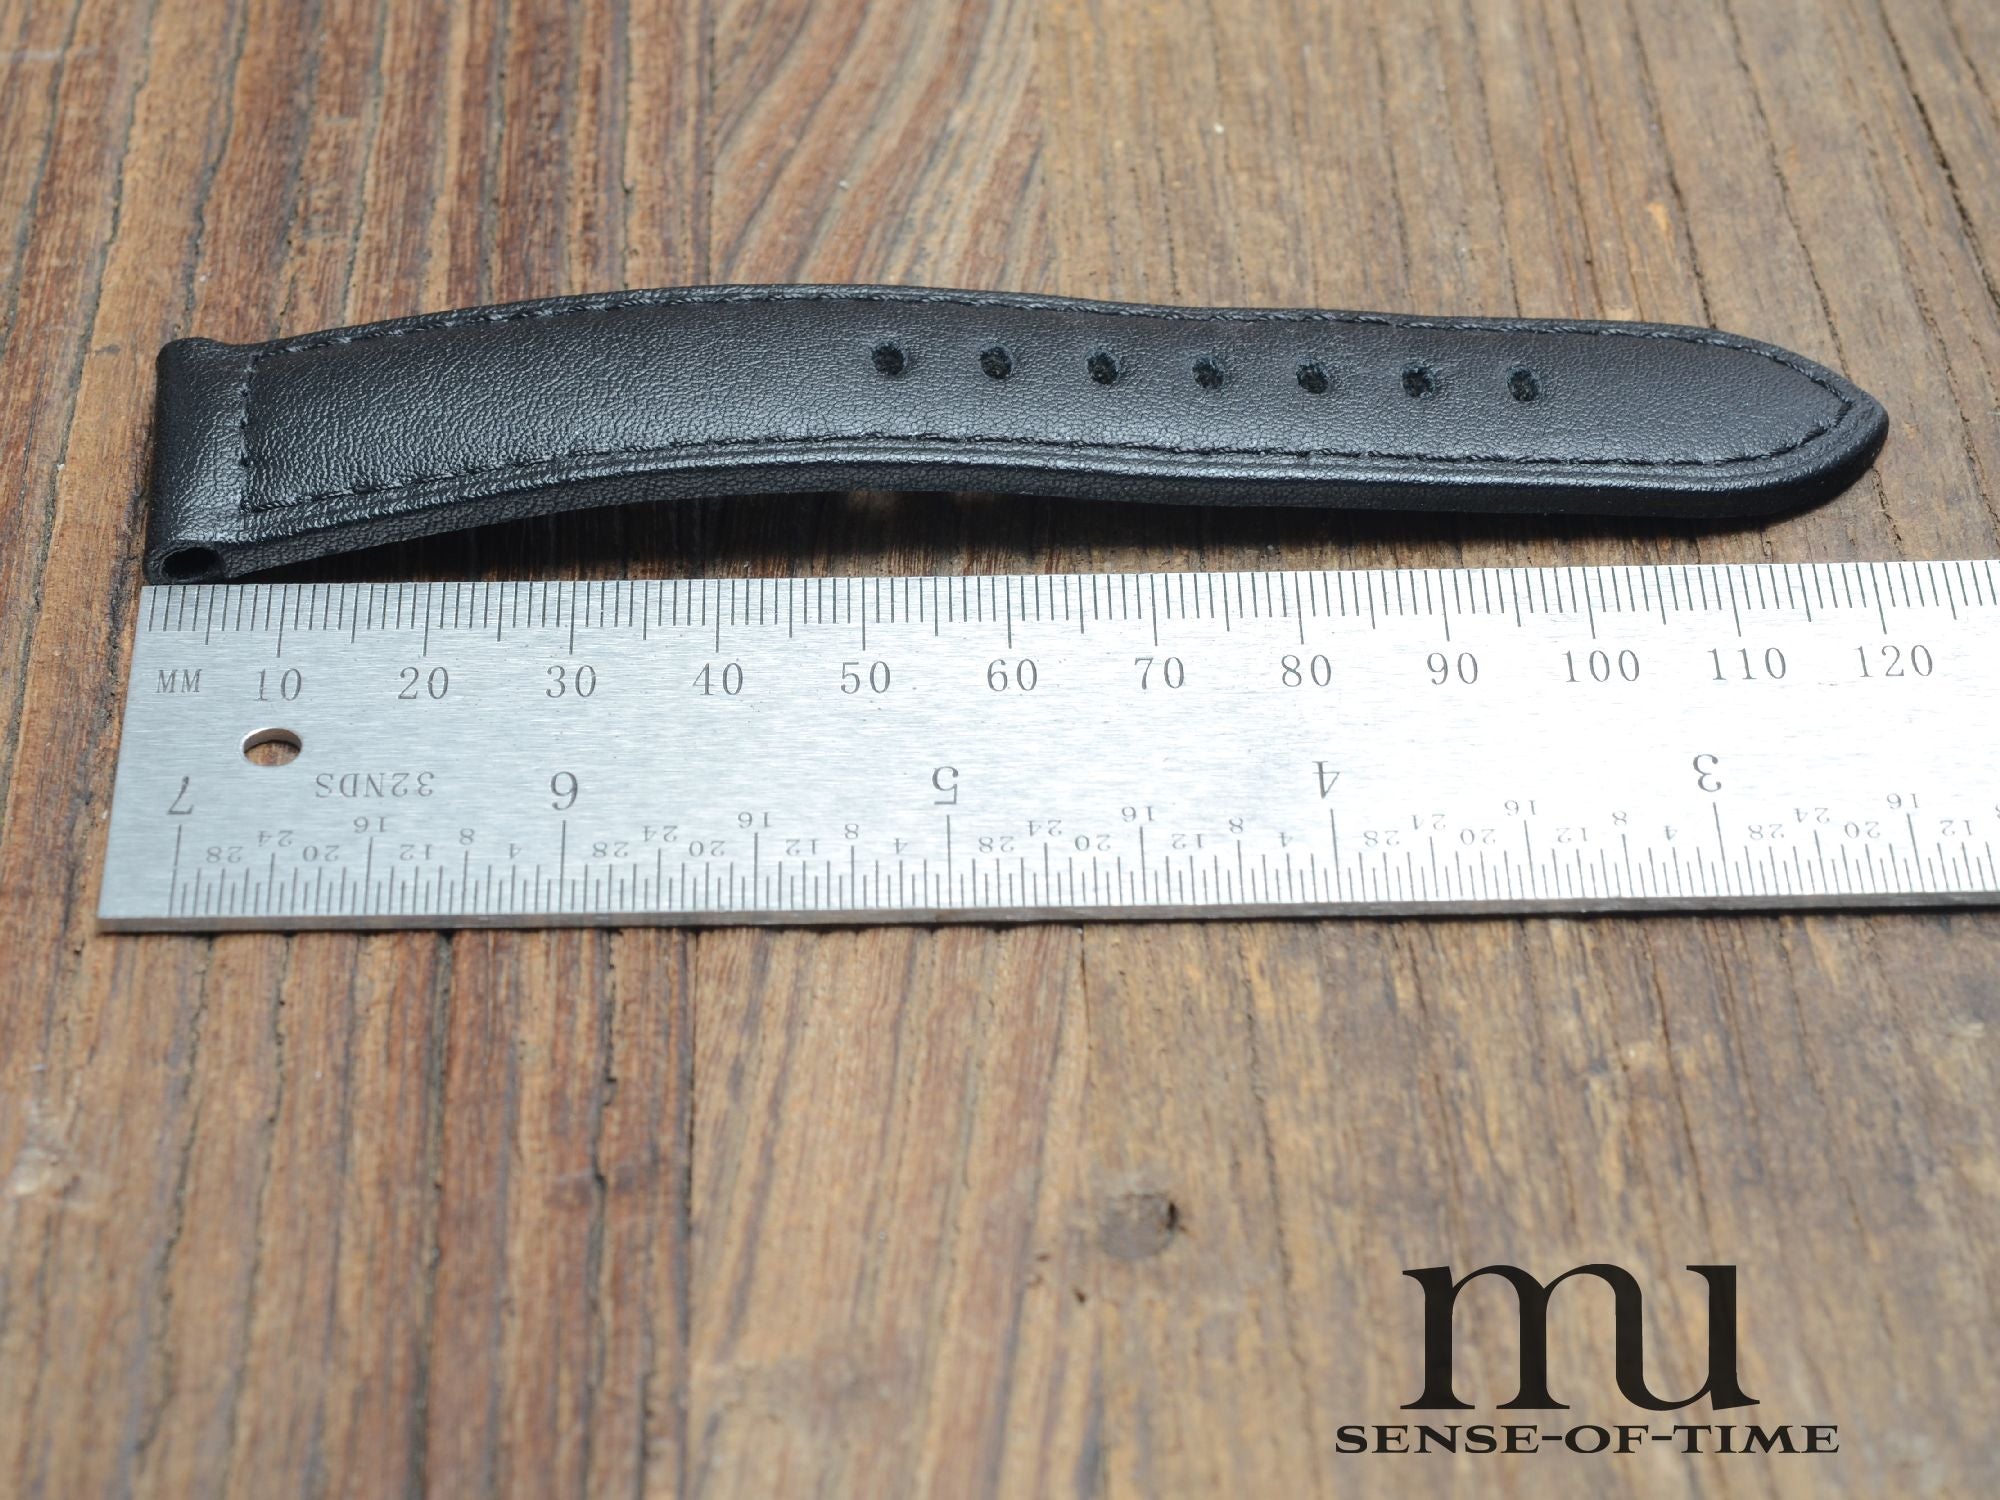 Zubehör: Panerai Lederband 24mm für Dornschließe, schwarz, neu